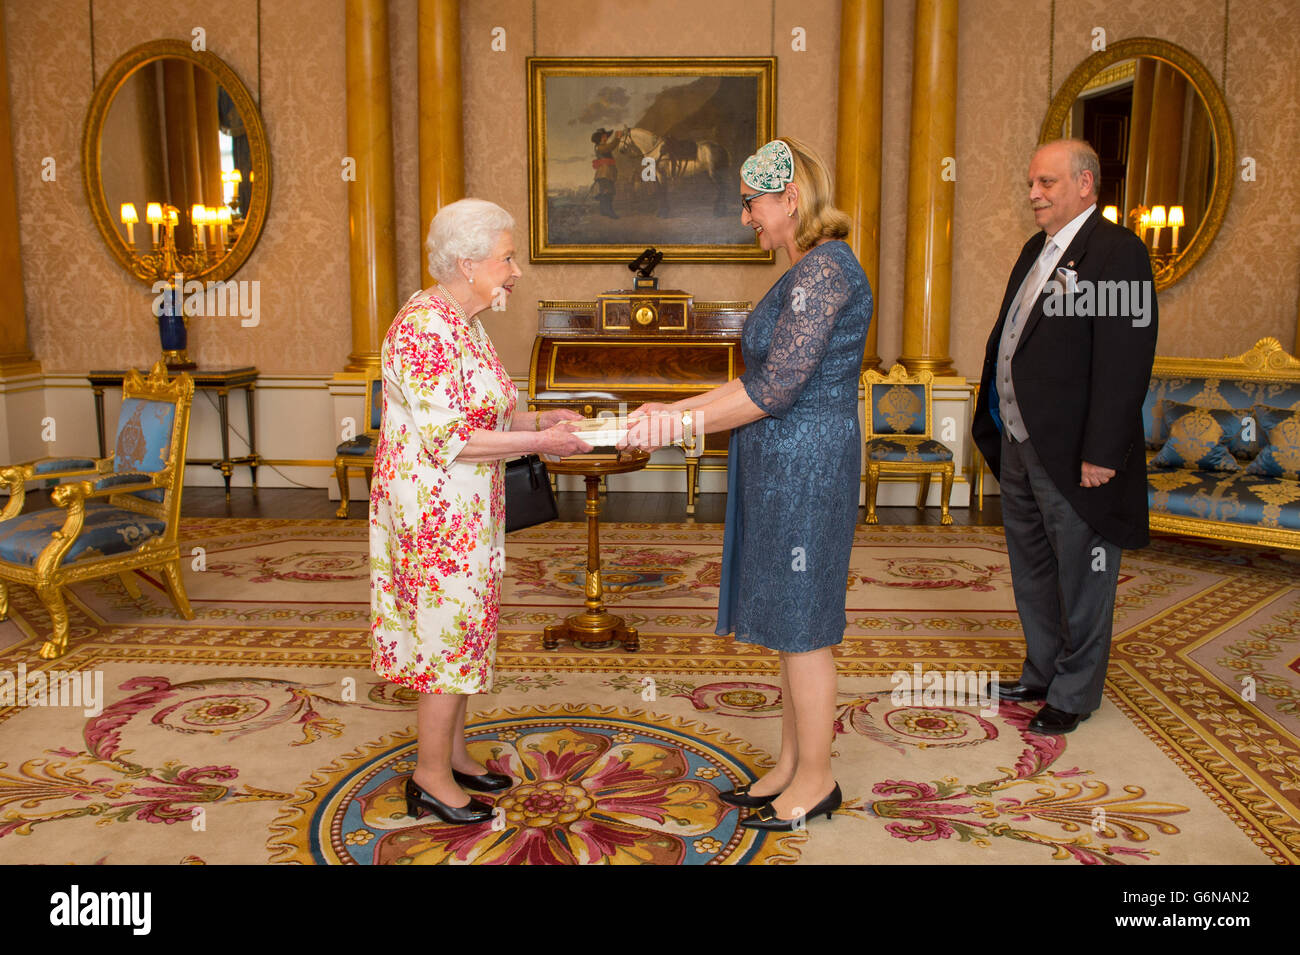 L'Ambassadeur de Géorgie Tamar Beruchashvili Rema et Gvamichava répond à la reine Elizabeth II lors d'une audience privée au palais de Buckingham, à Londres. Banque D'Images